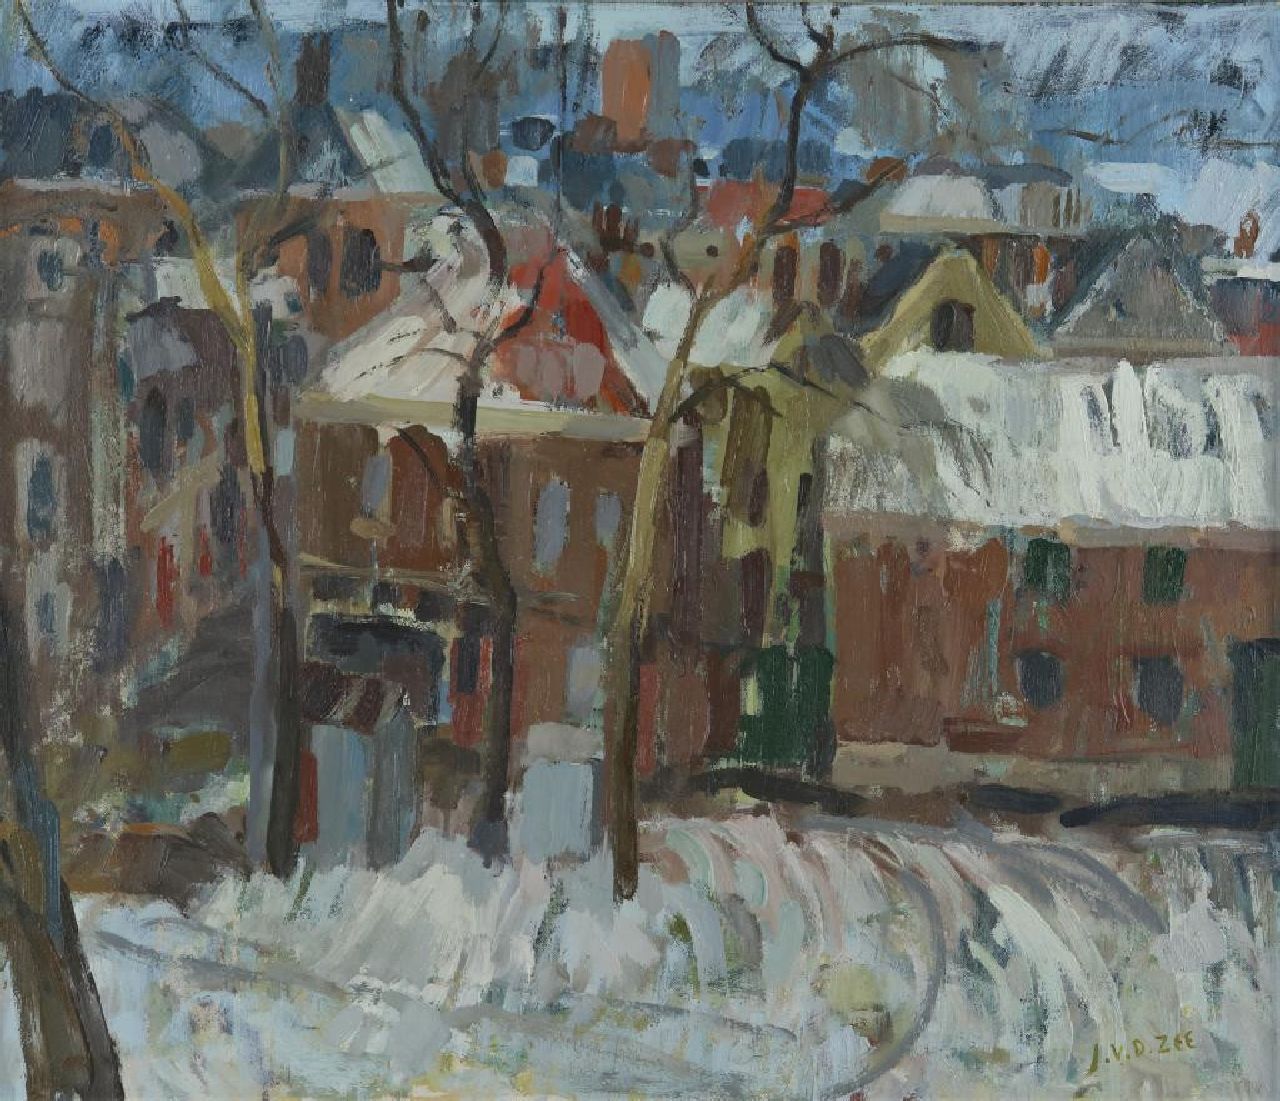 Zee J. van der | Jan van der Zee | Gemälde zum Verkauf angeboten | Stadbild des schneebedeckten Groningen, Öl auf Leinwand 59,8 x 70,1 cm, Unterzeichnet u.r.